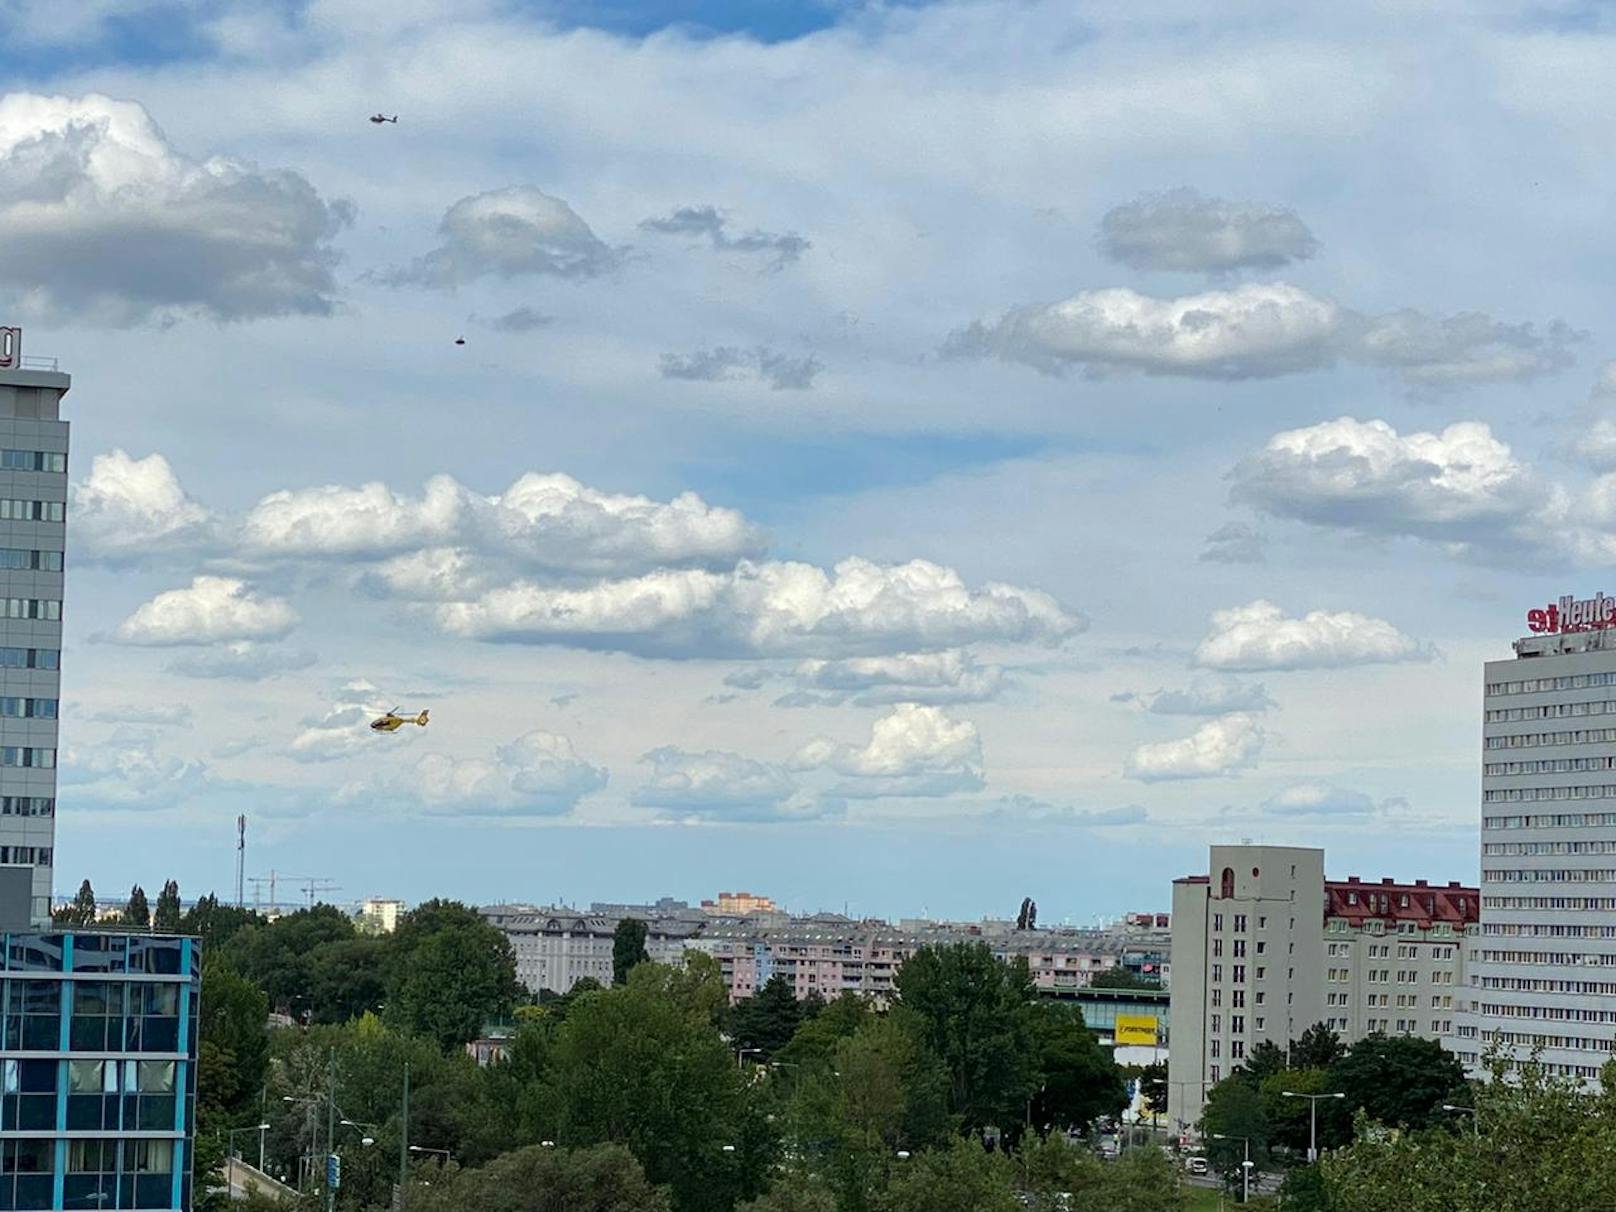 Mehrere Hubschrauber kreisen über Döbling und Brigittenau.